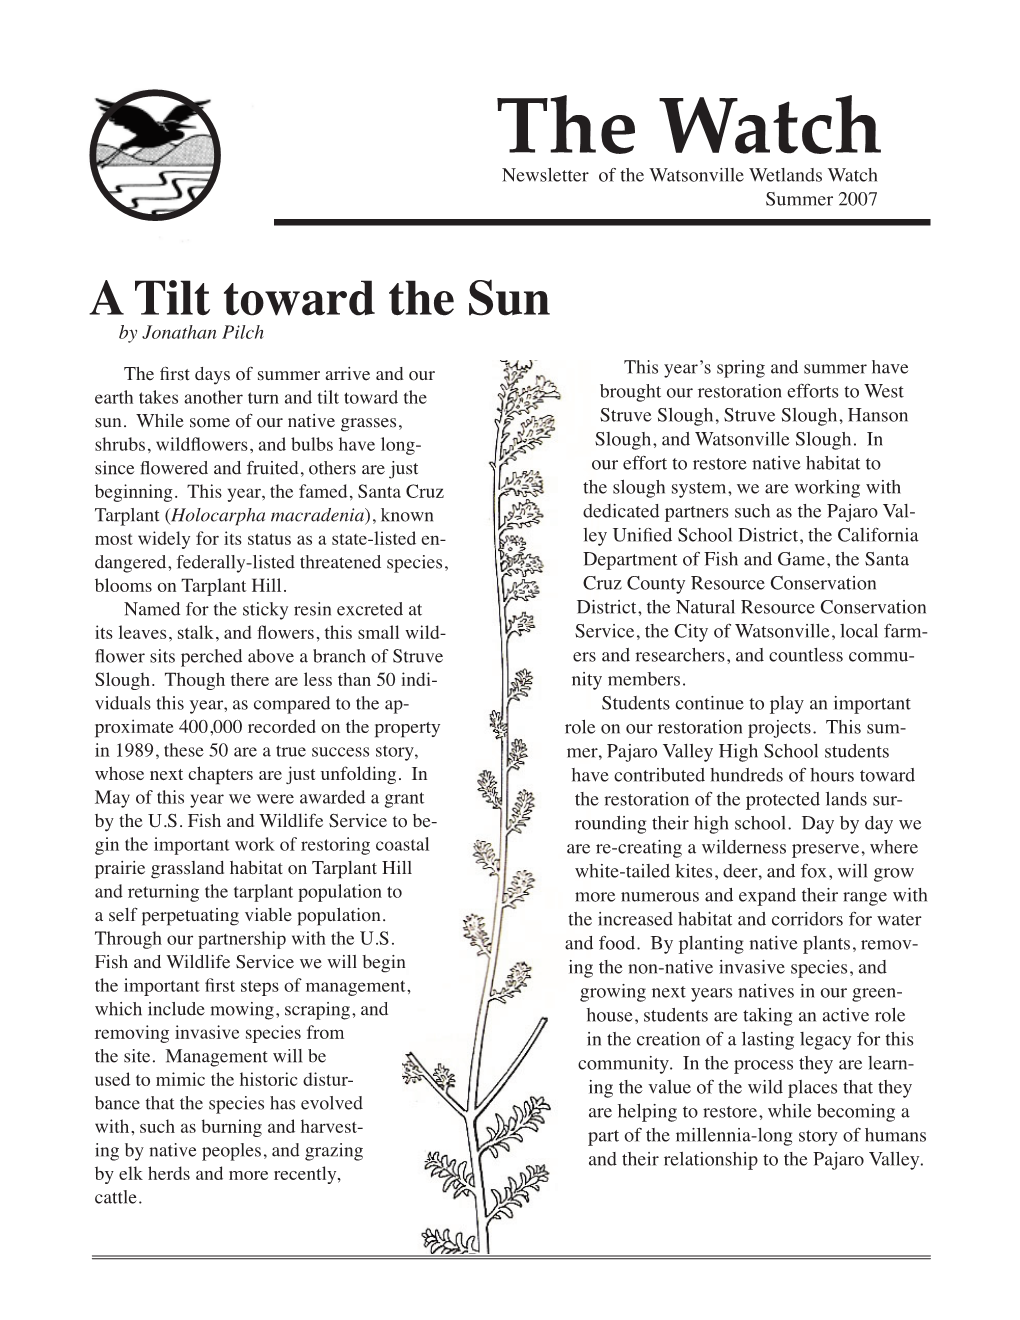 A Tilt Toward the Sun by Jonathan Pilch